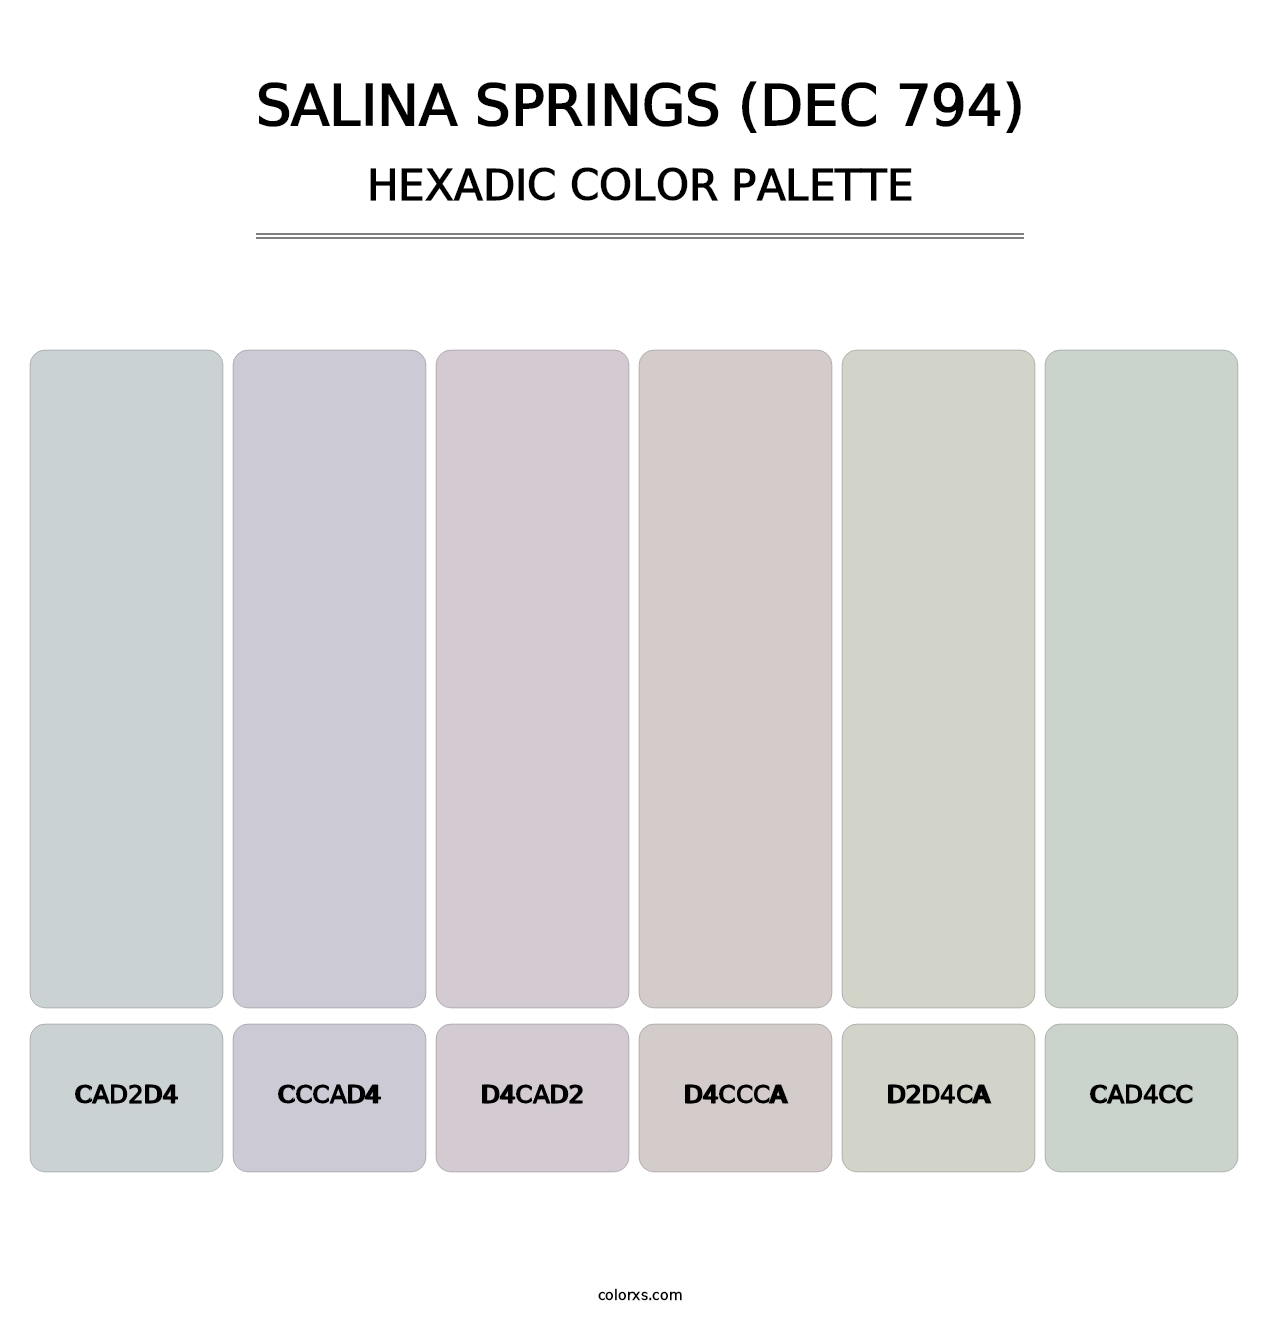 Salina Springs (DEC 794) - Hexadic Color Palette